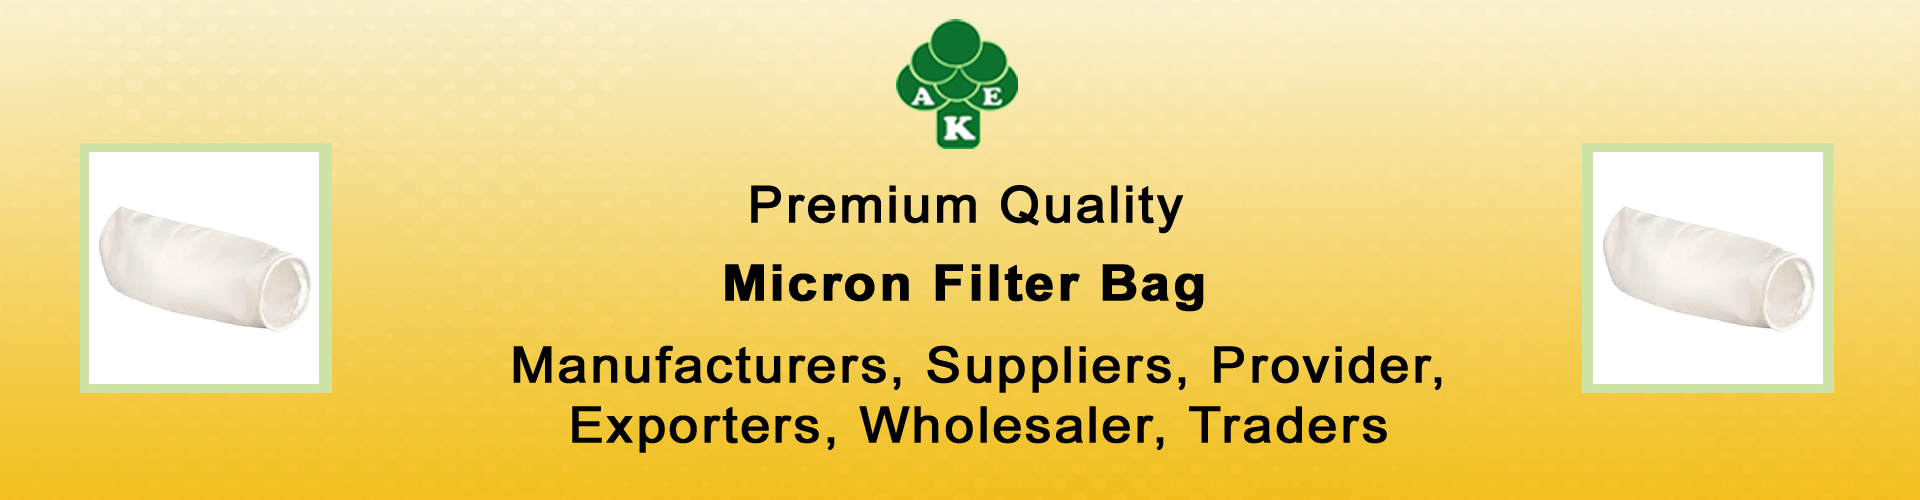 Micron Filter Bag